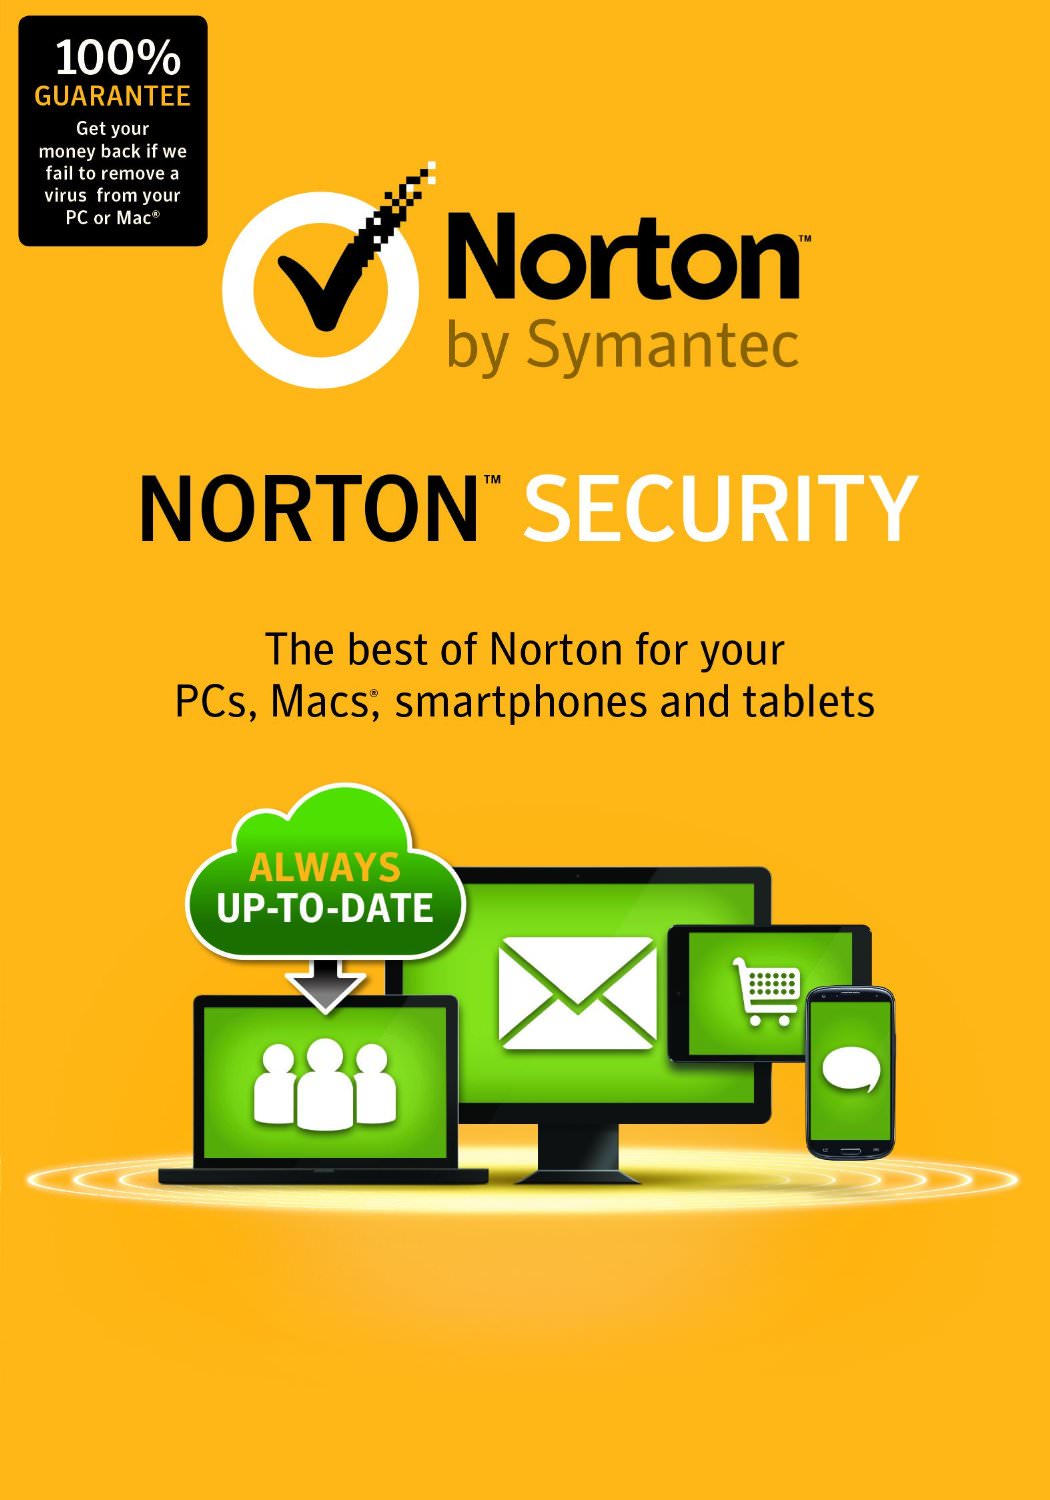 norton antivírus para celular download gratuito